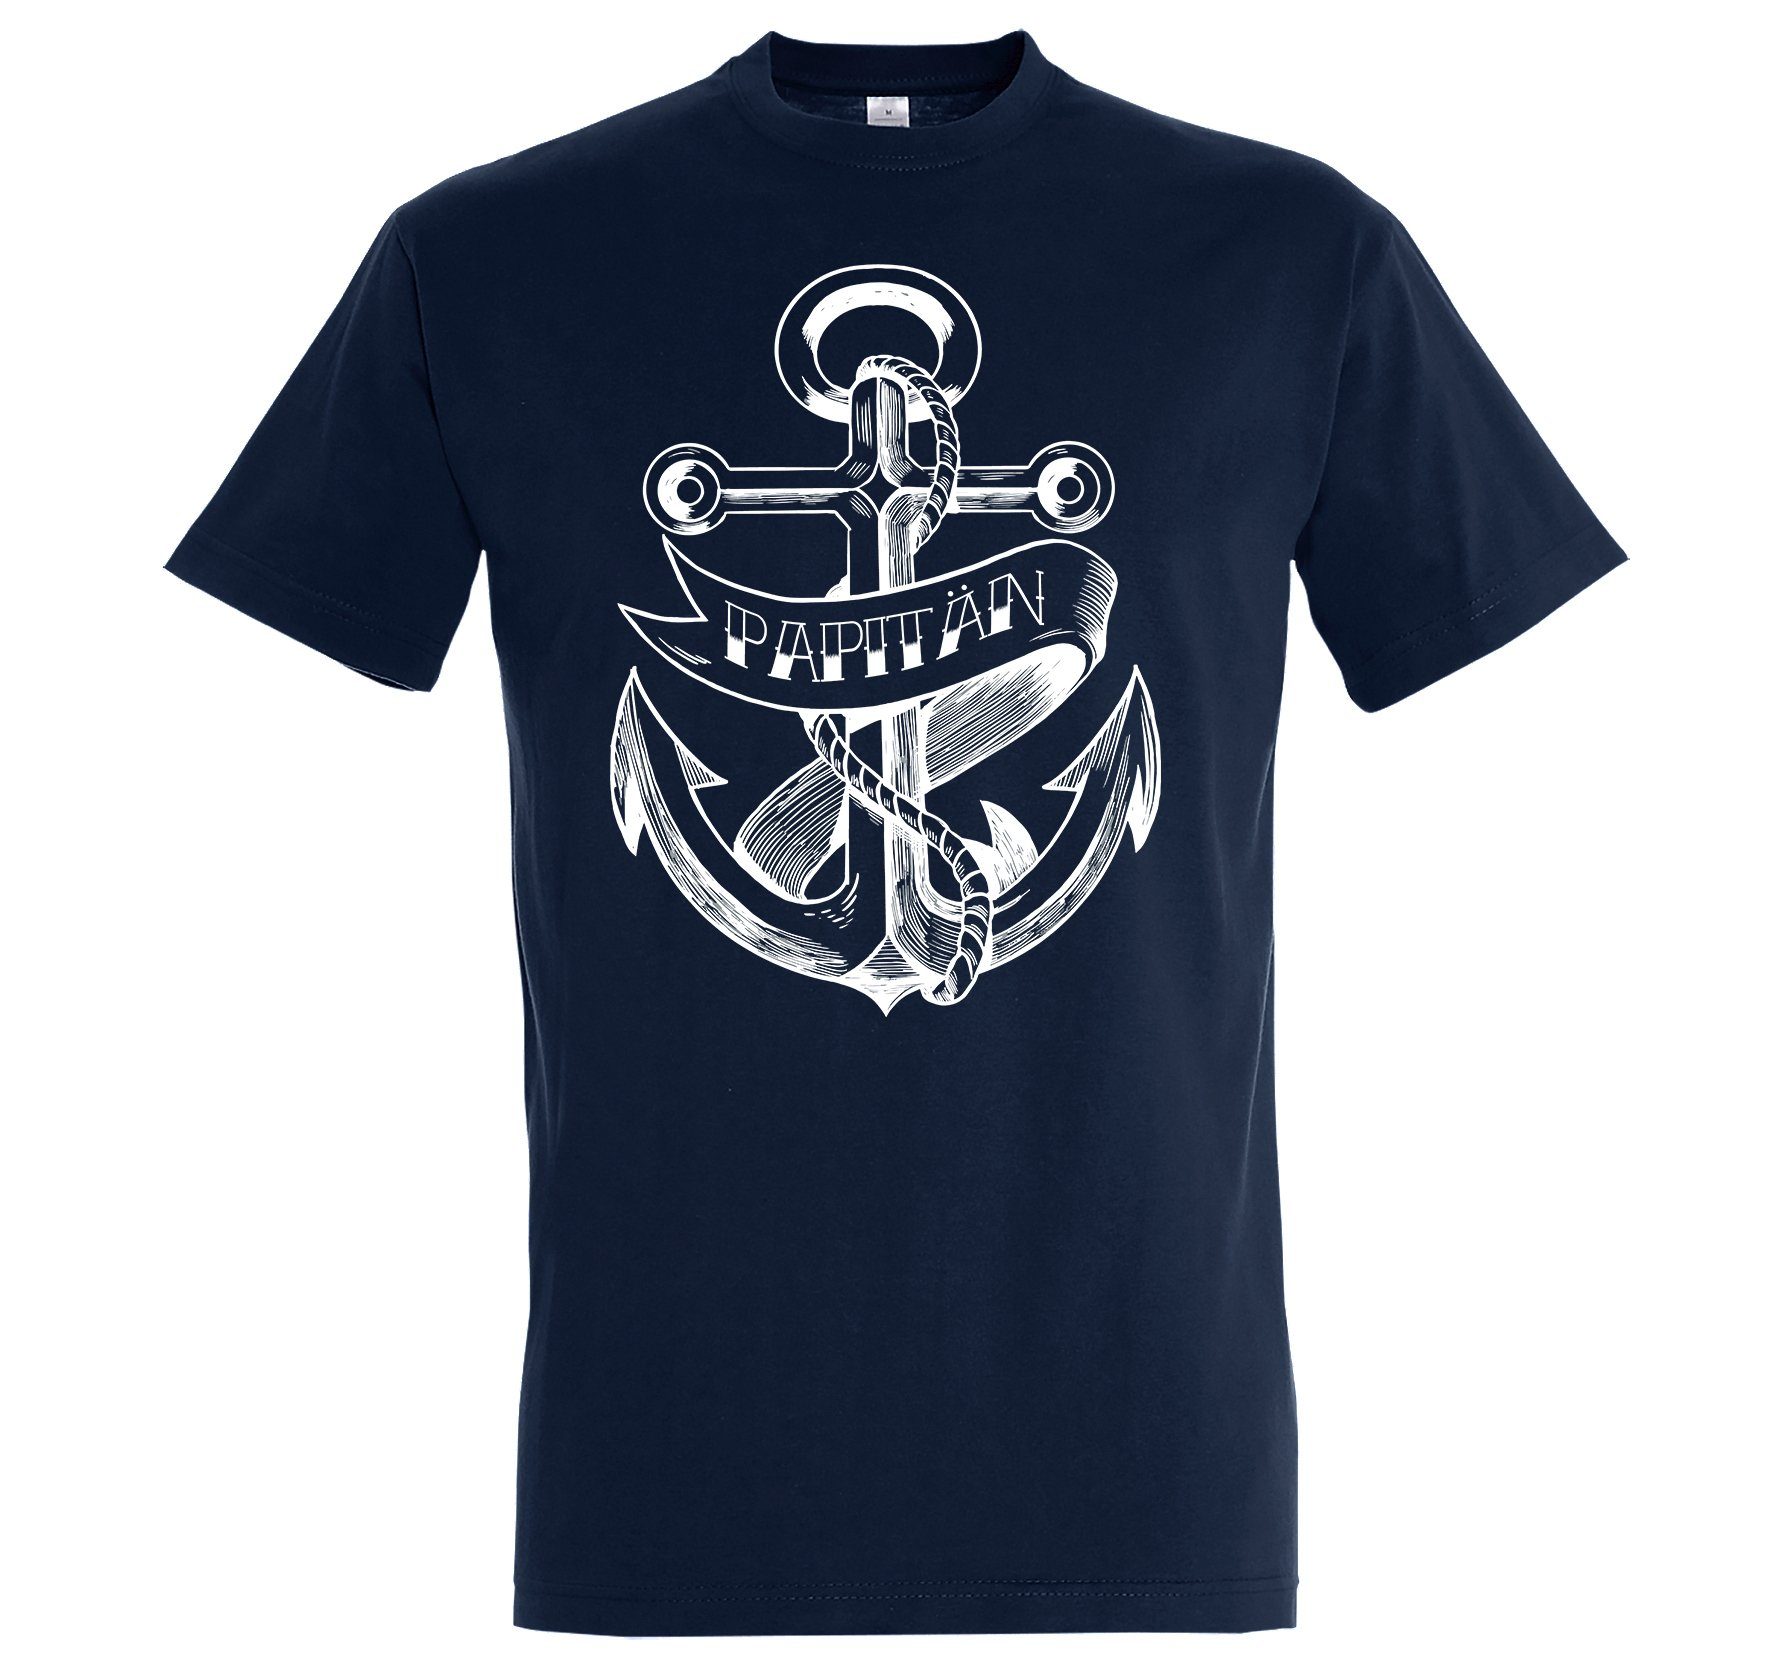 Frontprint Navyblau Papitän Youth Designz Shirt Herren mit T-Shirt Kapitän lustigem